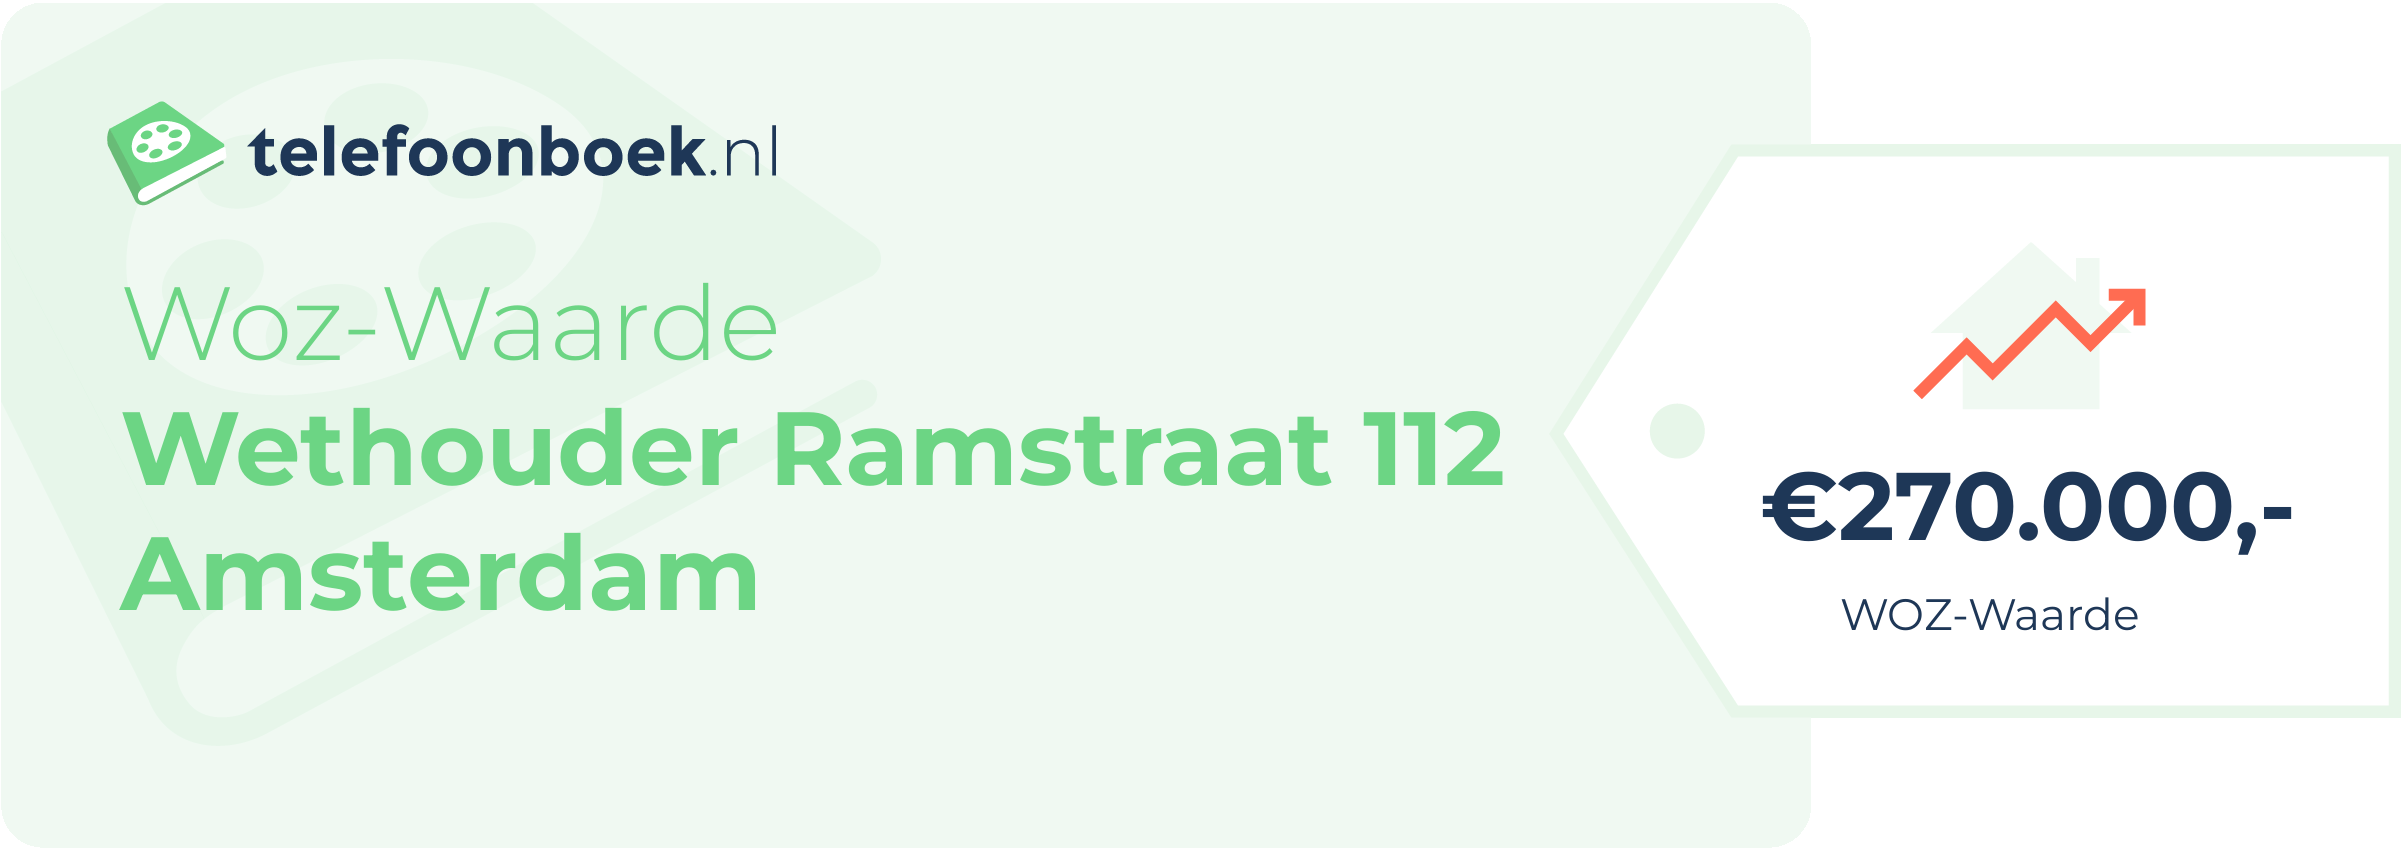 WOZ-waarde Wethouder Ramstraat 112 Amsterdam